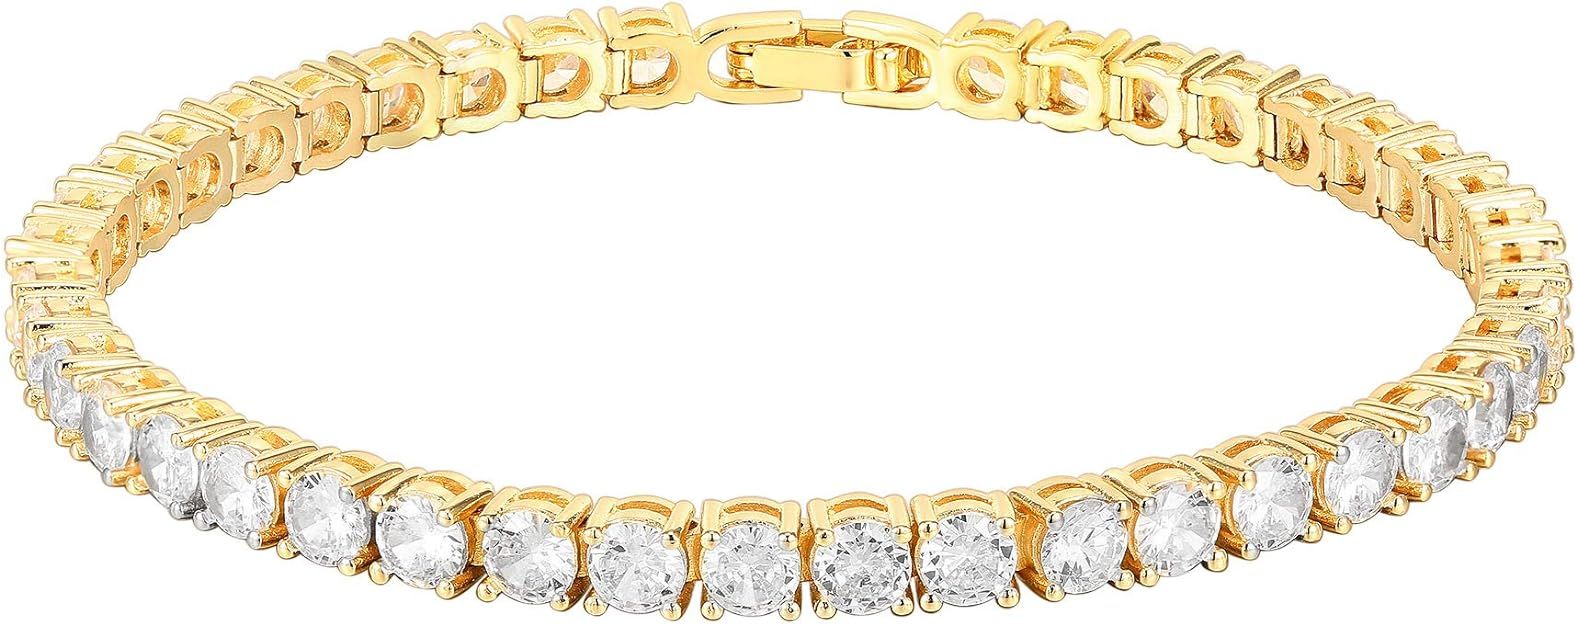 PAVOI 14K Gold Plated Cubic Zirconia Classic Tennis Bracelet | Gold Bracelets for Women | 4mm CZ,... | Amazon (US)